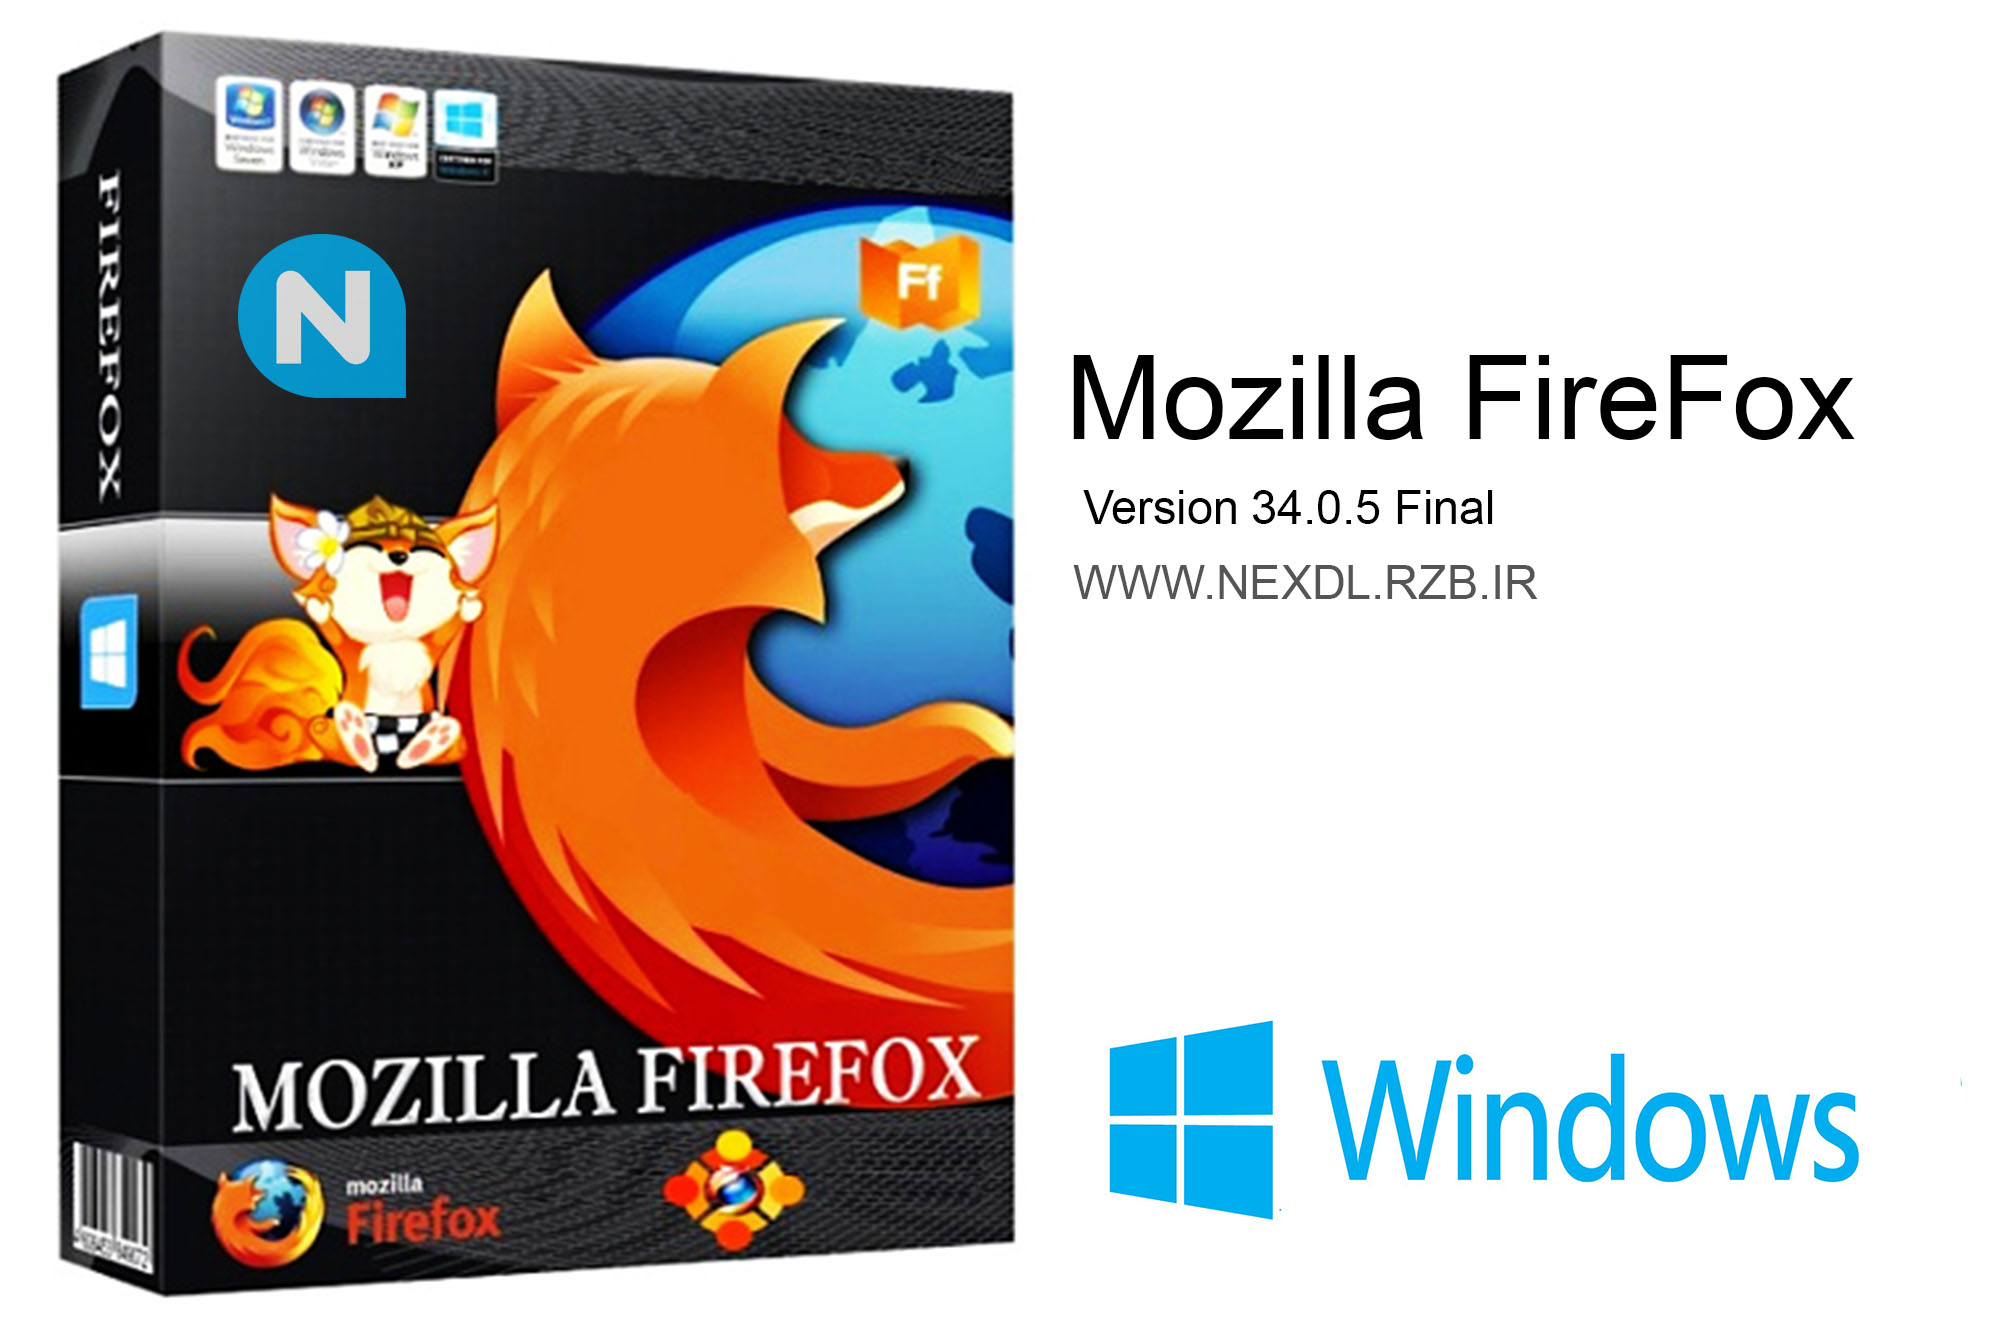 دانلود Mozilla Firefox 34.0.5 Final - جدیدترین نسخه موزیلا فایرفاکس